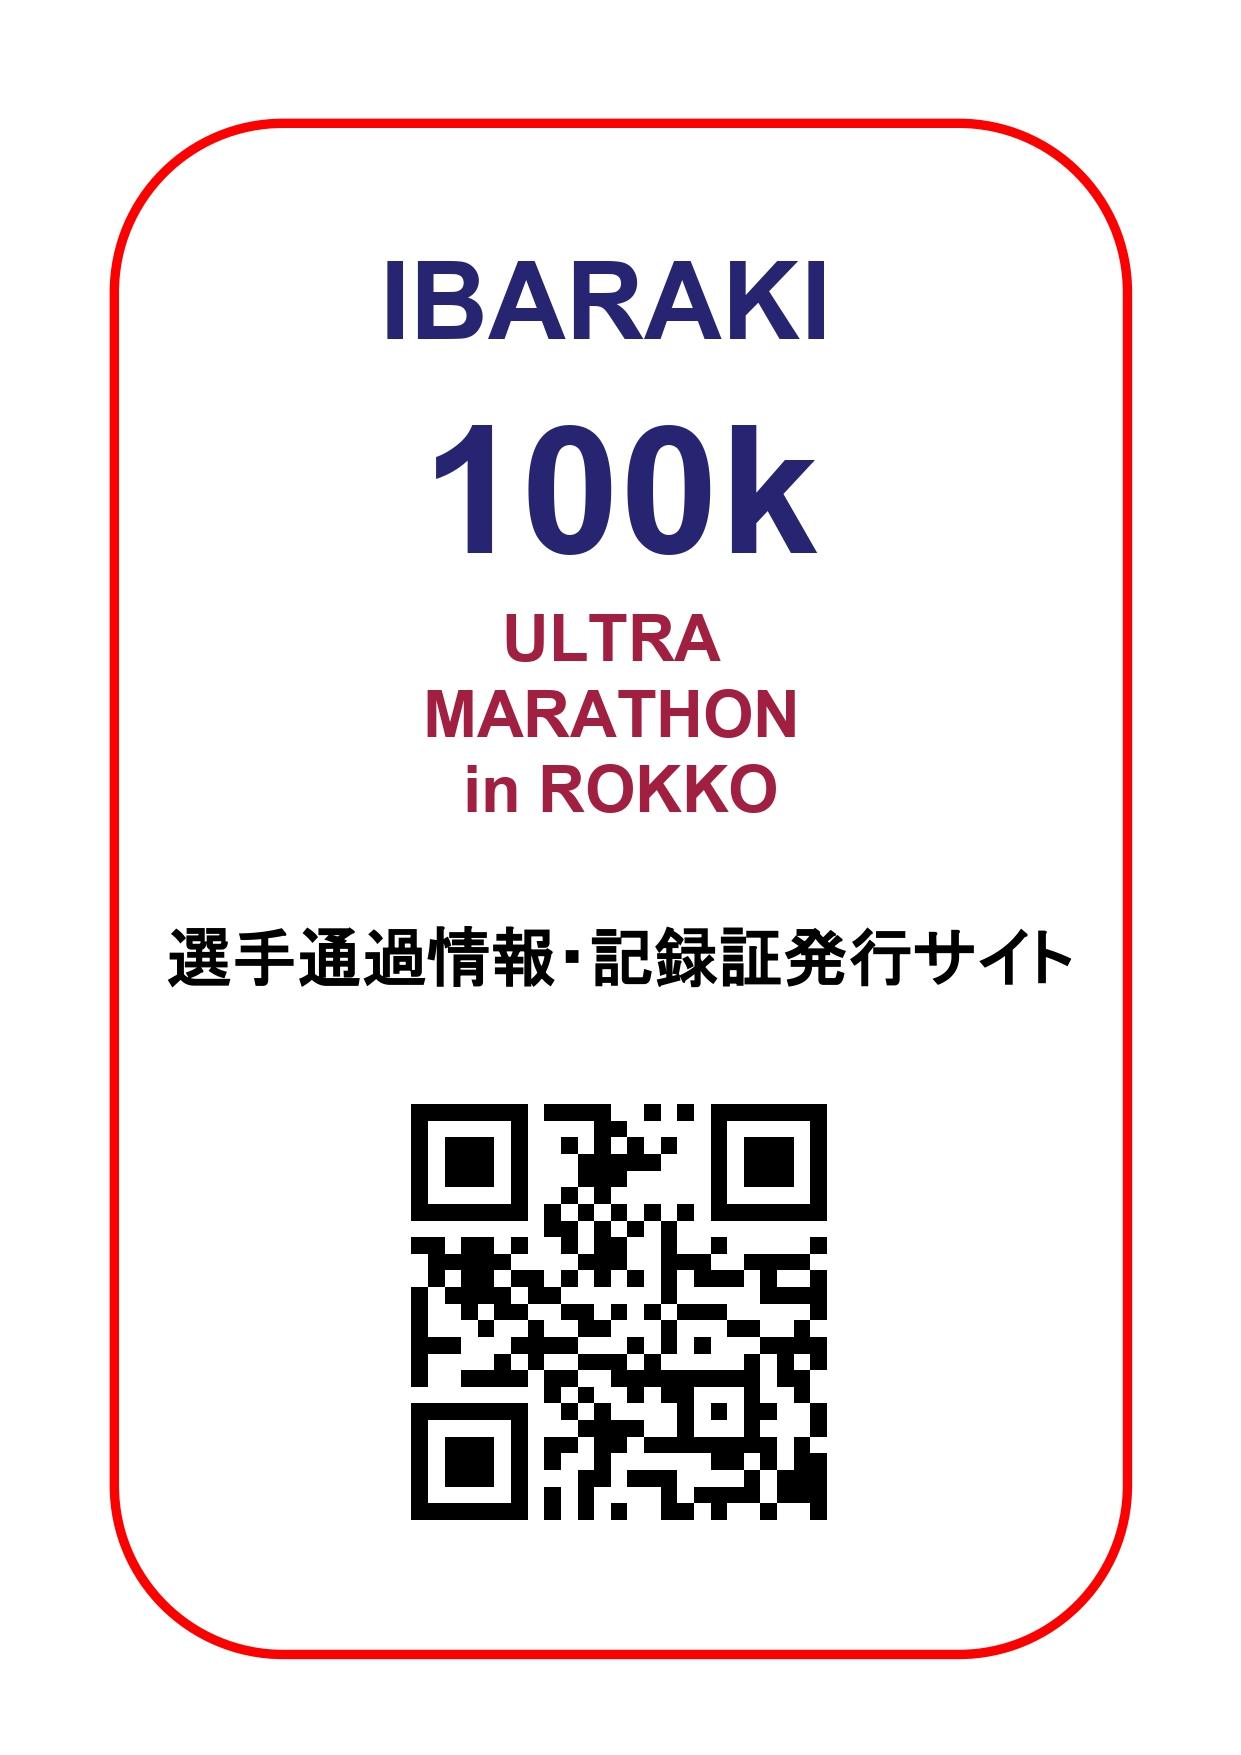 IBARAKI100k　選手通過情報、記録証発行サイト